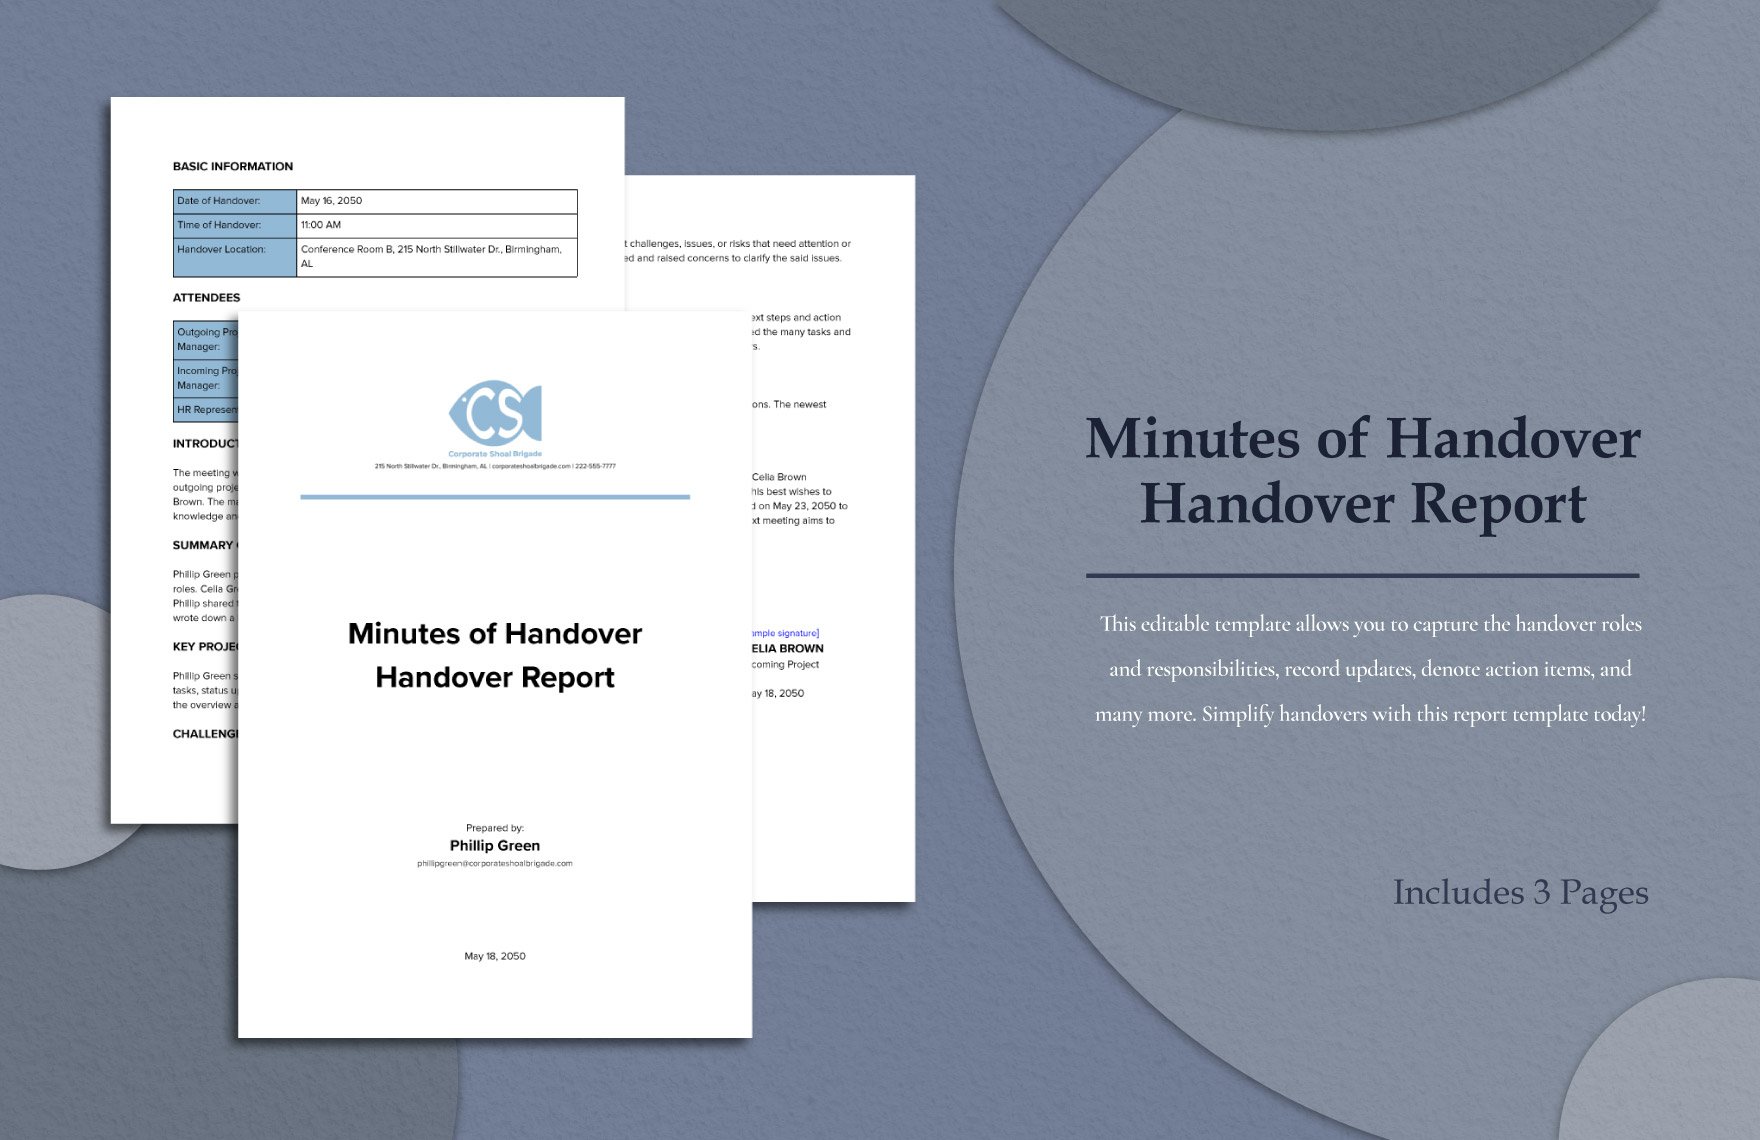 Minutes of Handover Handover Report